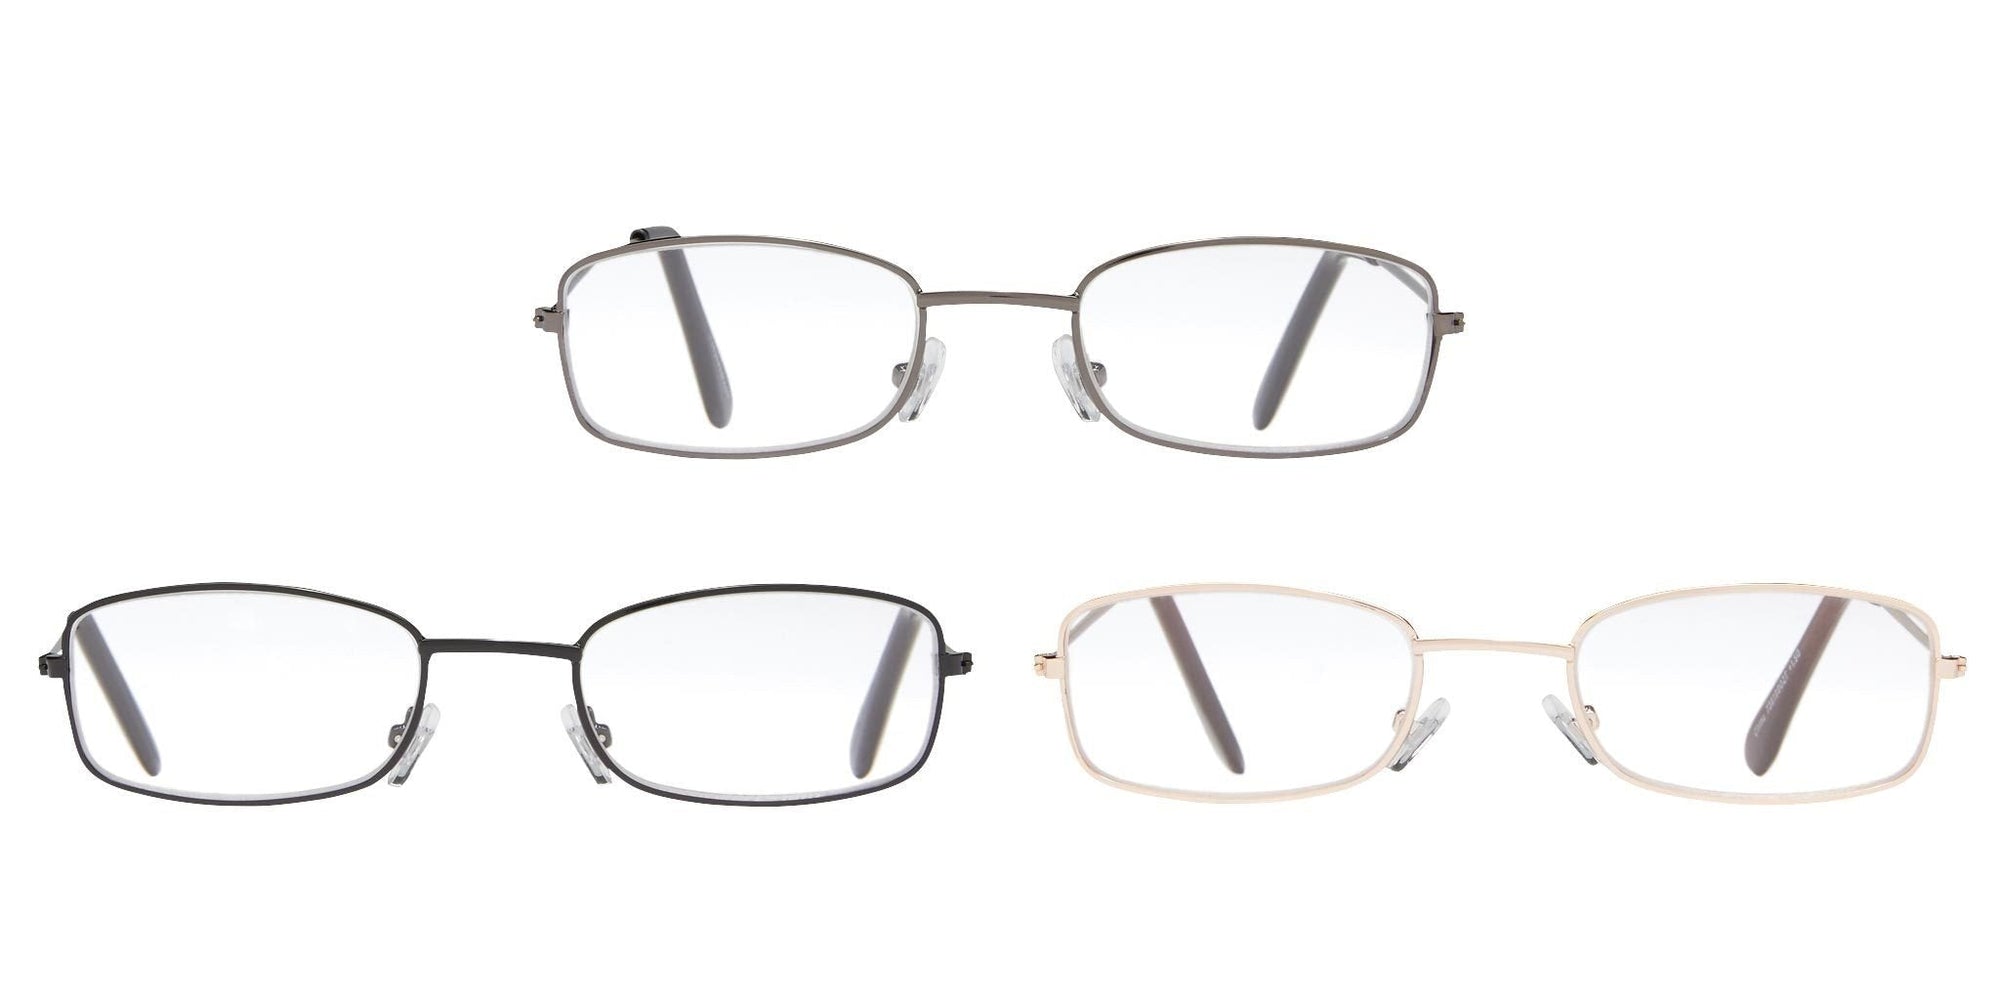 3-Pack Reading Glasses: Black/Gold/Gunmetal - 1.25 Glasses